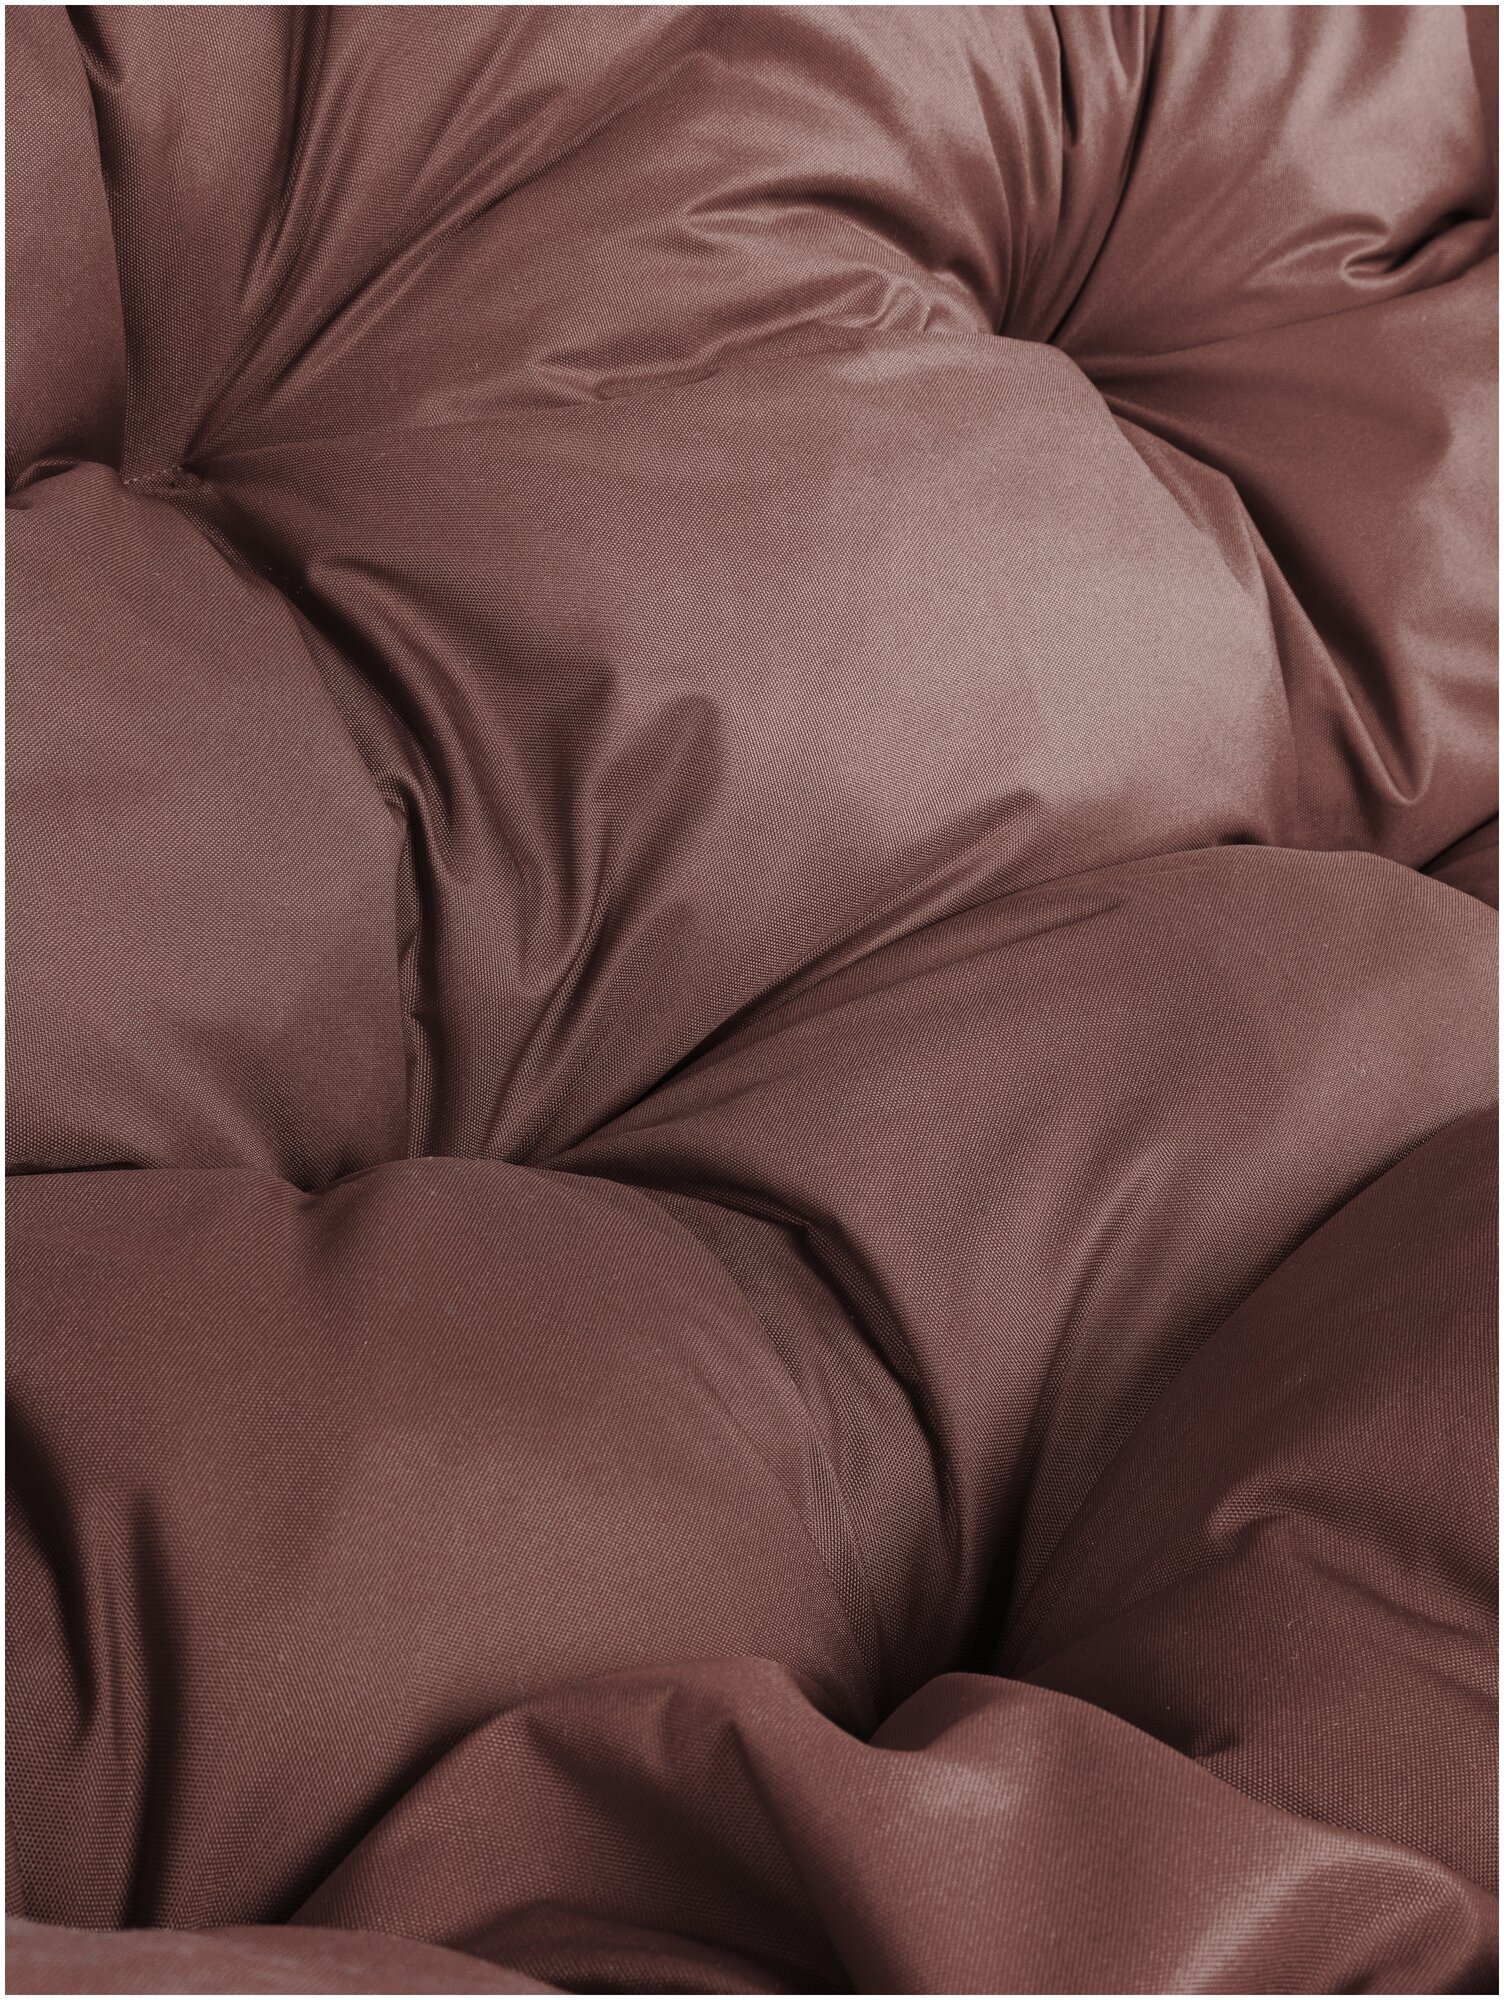 Диван M-Group лежебока на подставке ротанг коричневый, коричневая подушка - фотография № 20